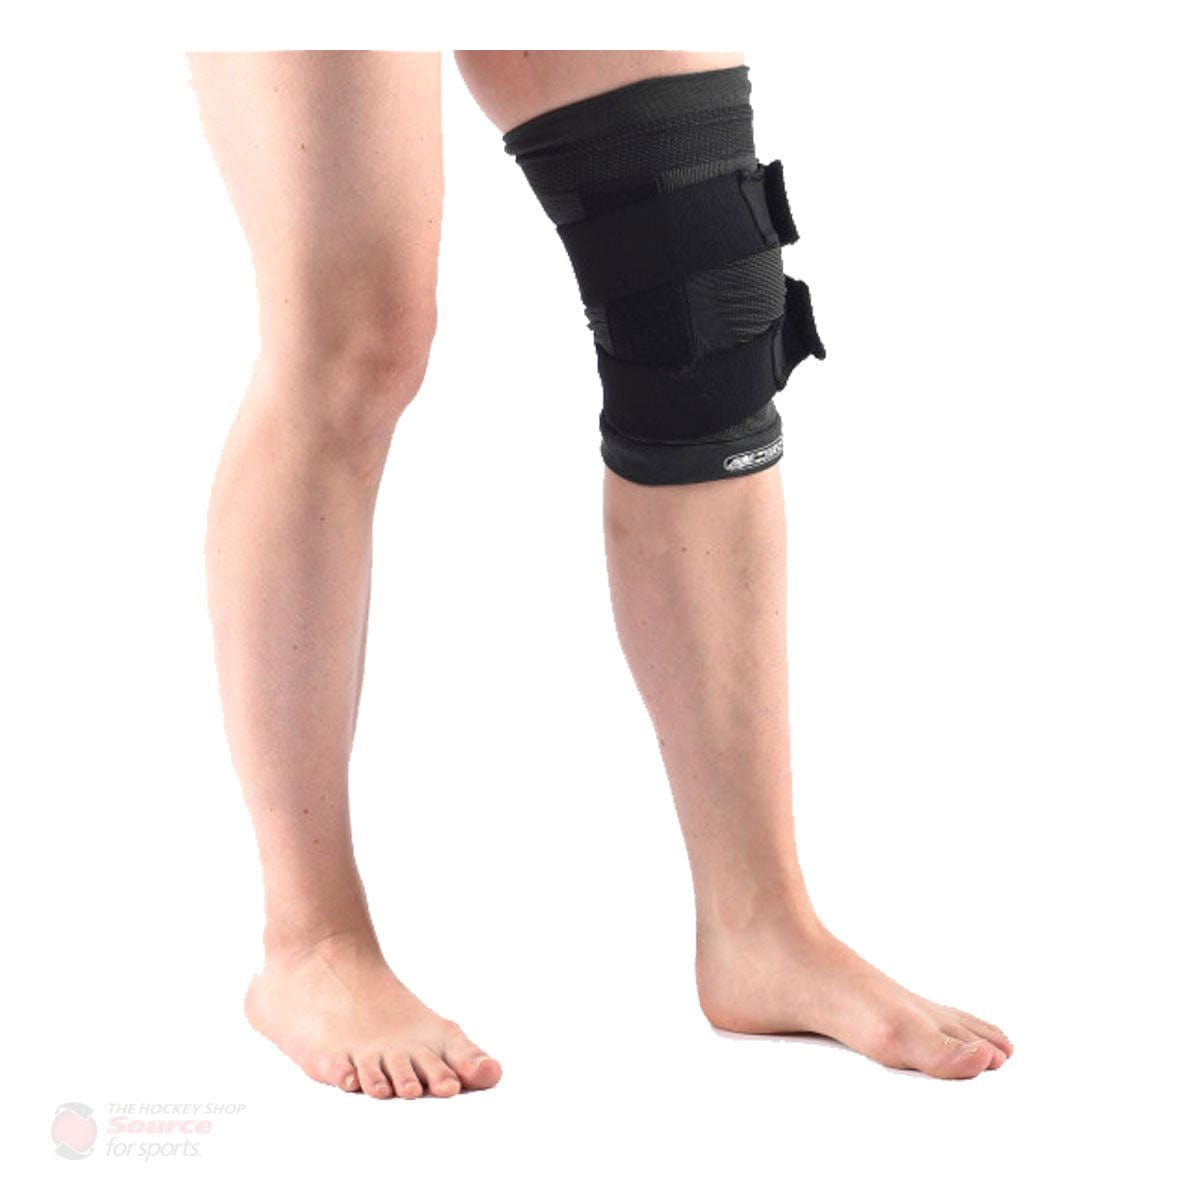 EC3D SportsMed 3D Pro Compression Knee Support Brace